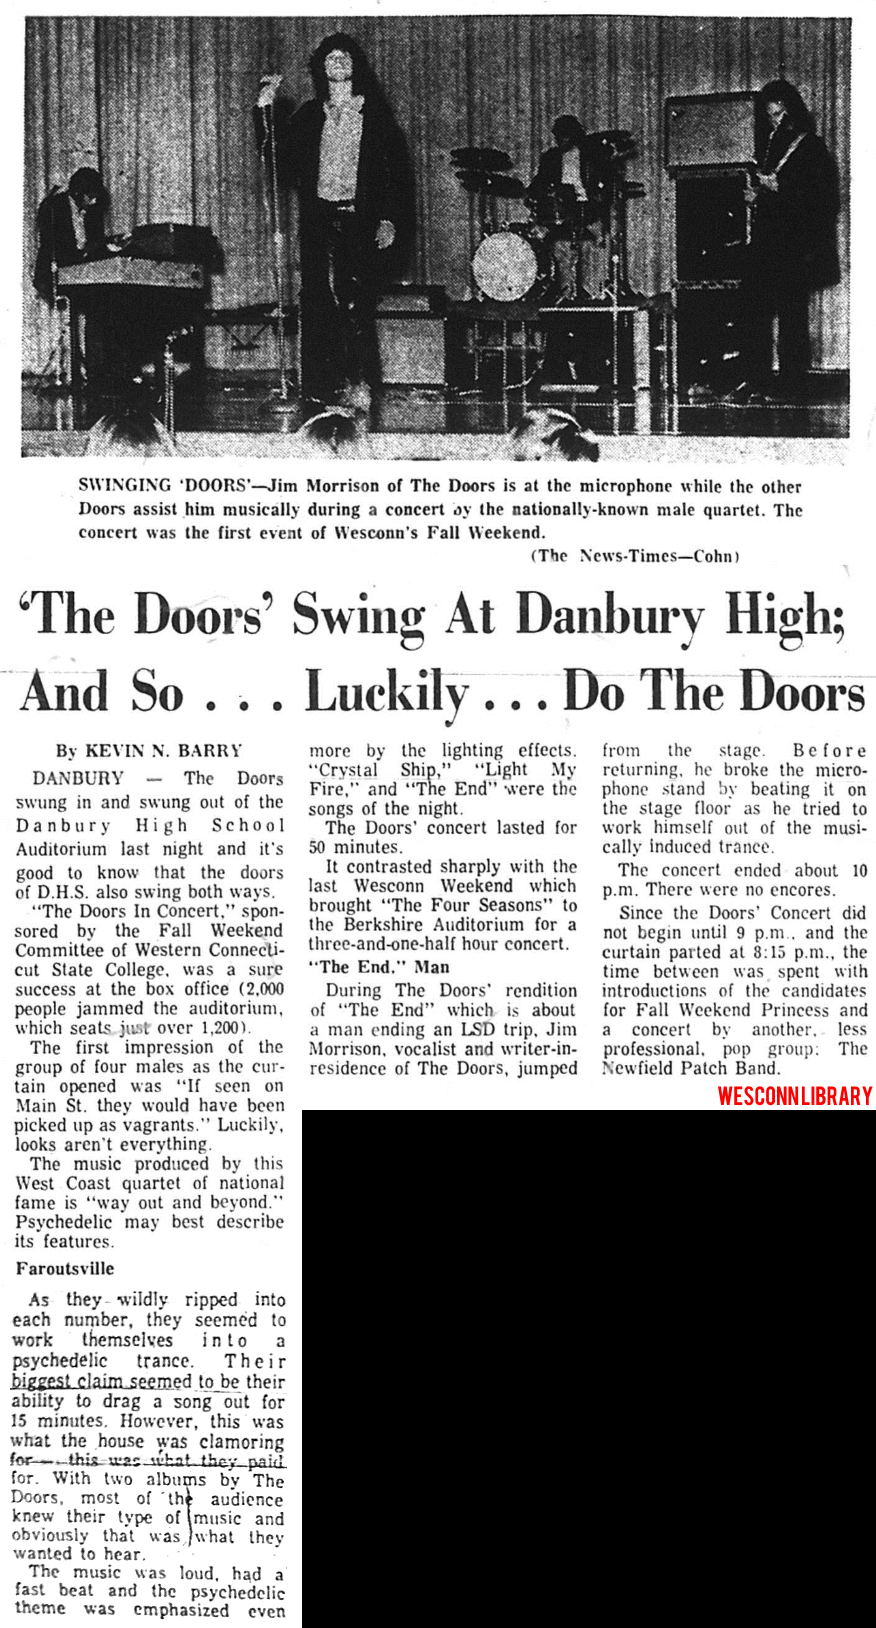 The Doors - Danbury High School 1967 - Review